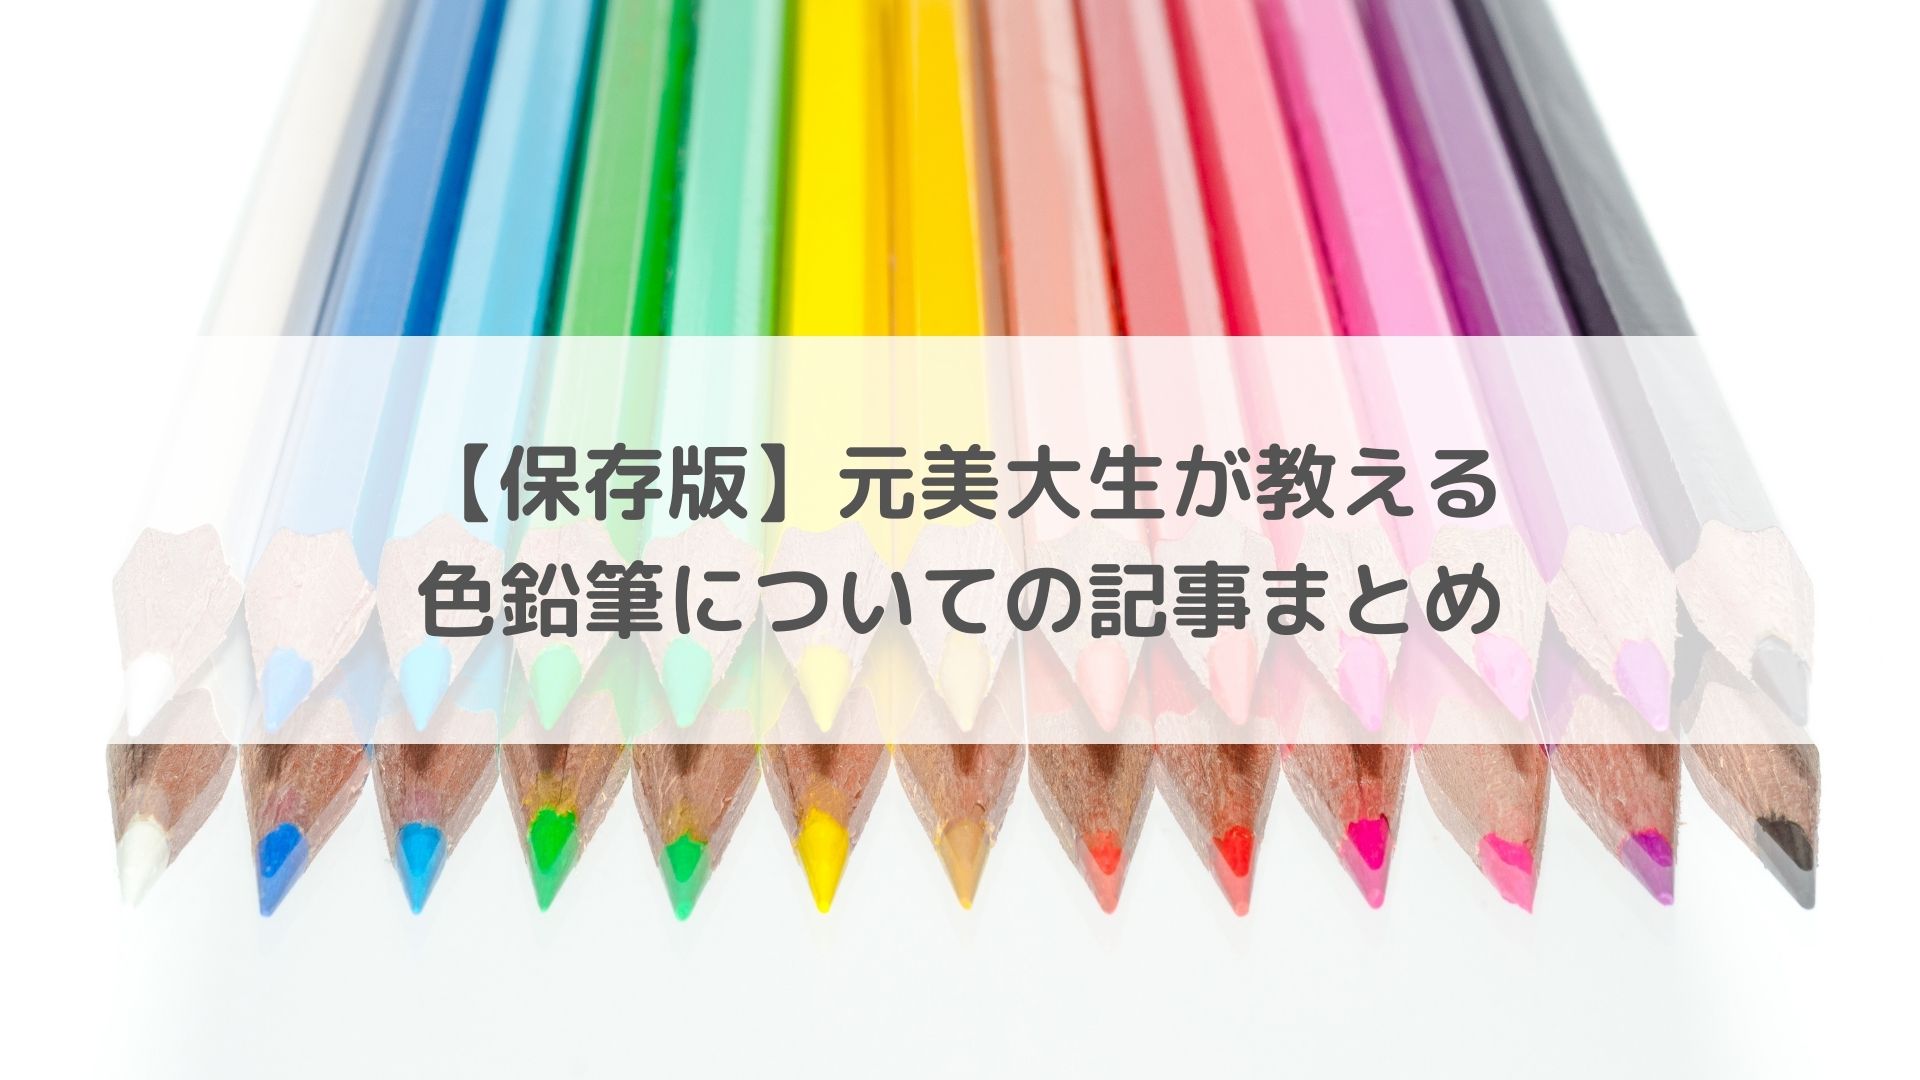 【保存版】元美大生が教える色鉛筆についての記事まとめ